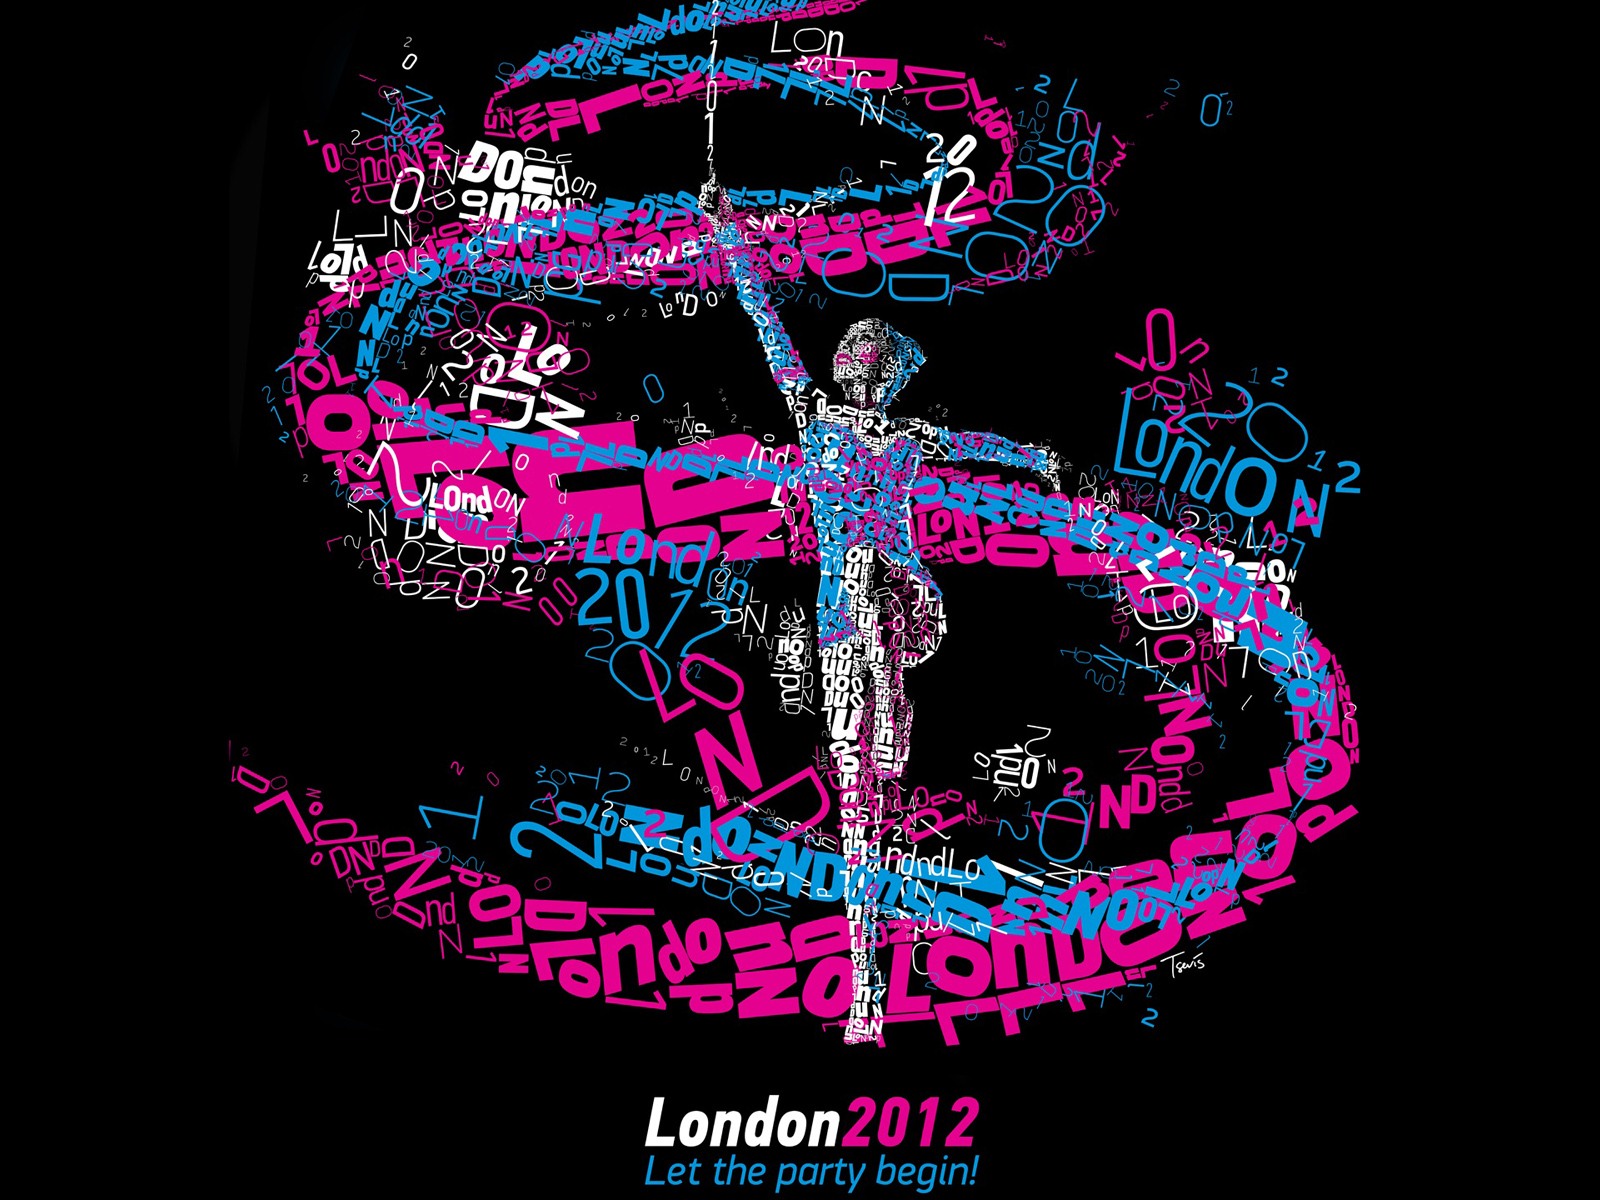 Londres 2012 Olimpiadas fondos temáticos (1) #23 - 1600x1200